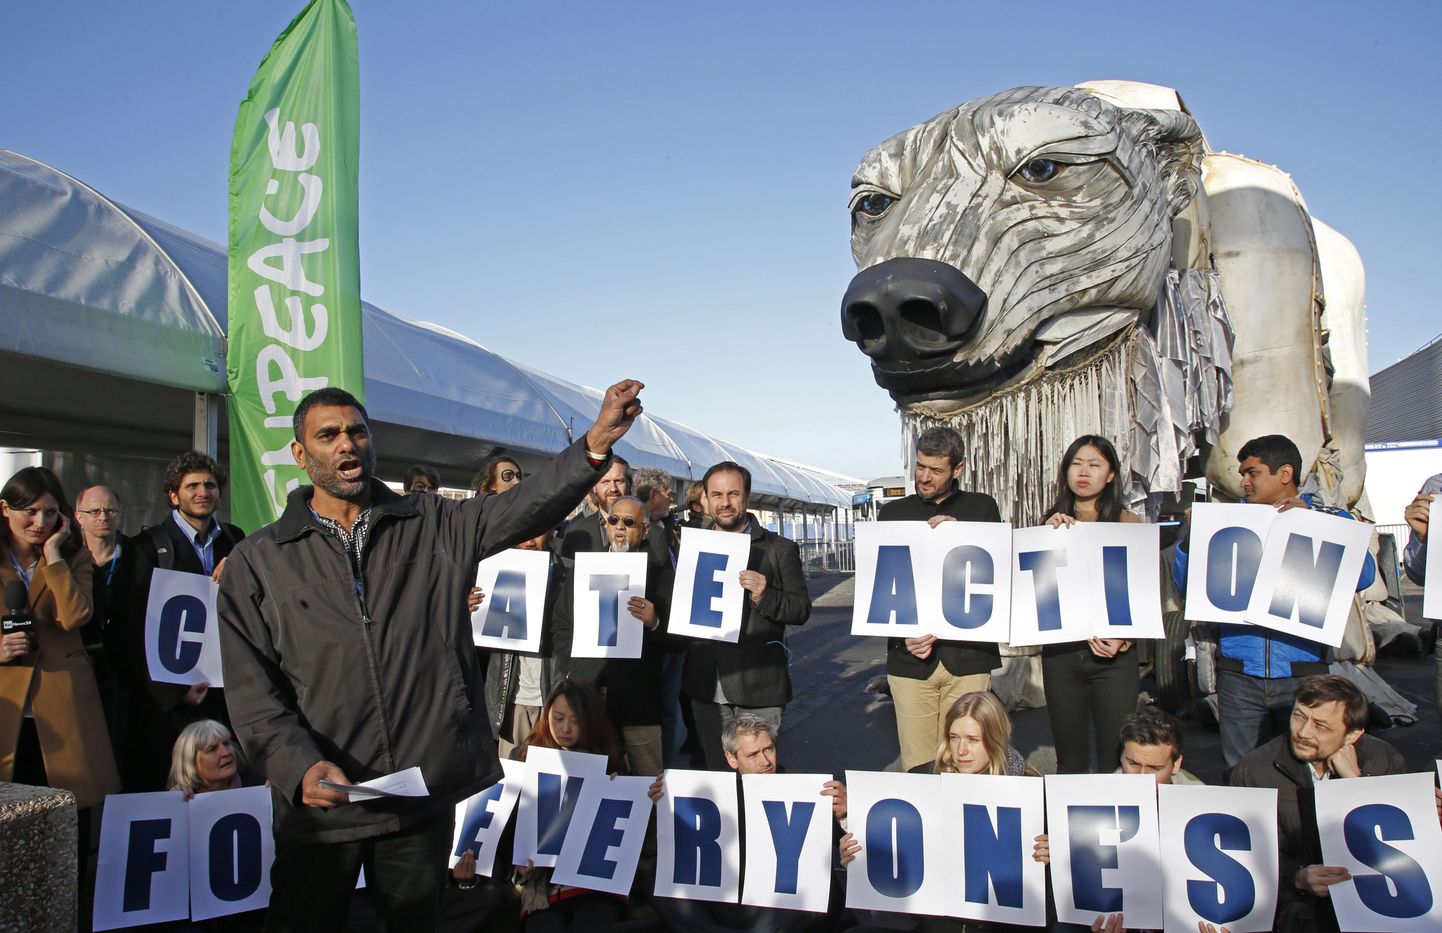 Lõuna-Aafrika päritolu Greenpeace'i juht Kumi Naidoo pidamas kõnet Pariisi kliimakõneluste ajal toimuval meeleavaldusel.